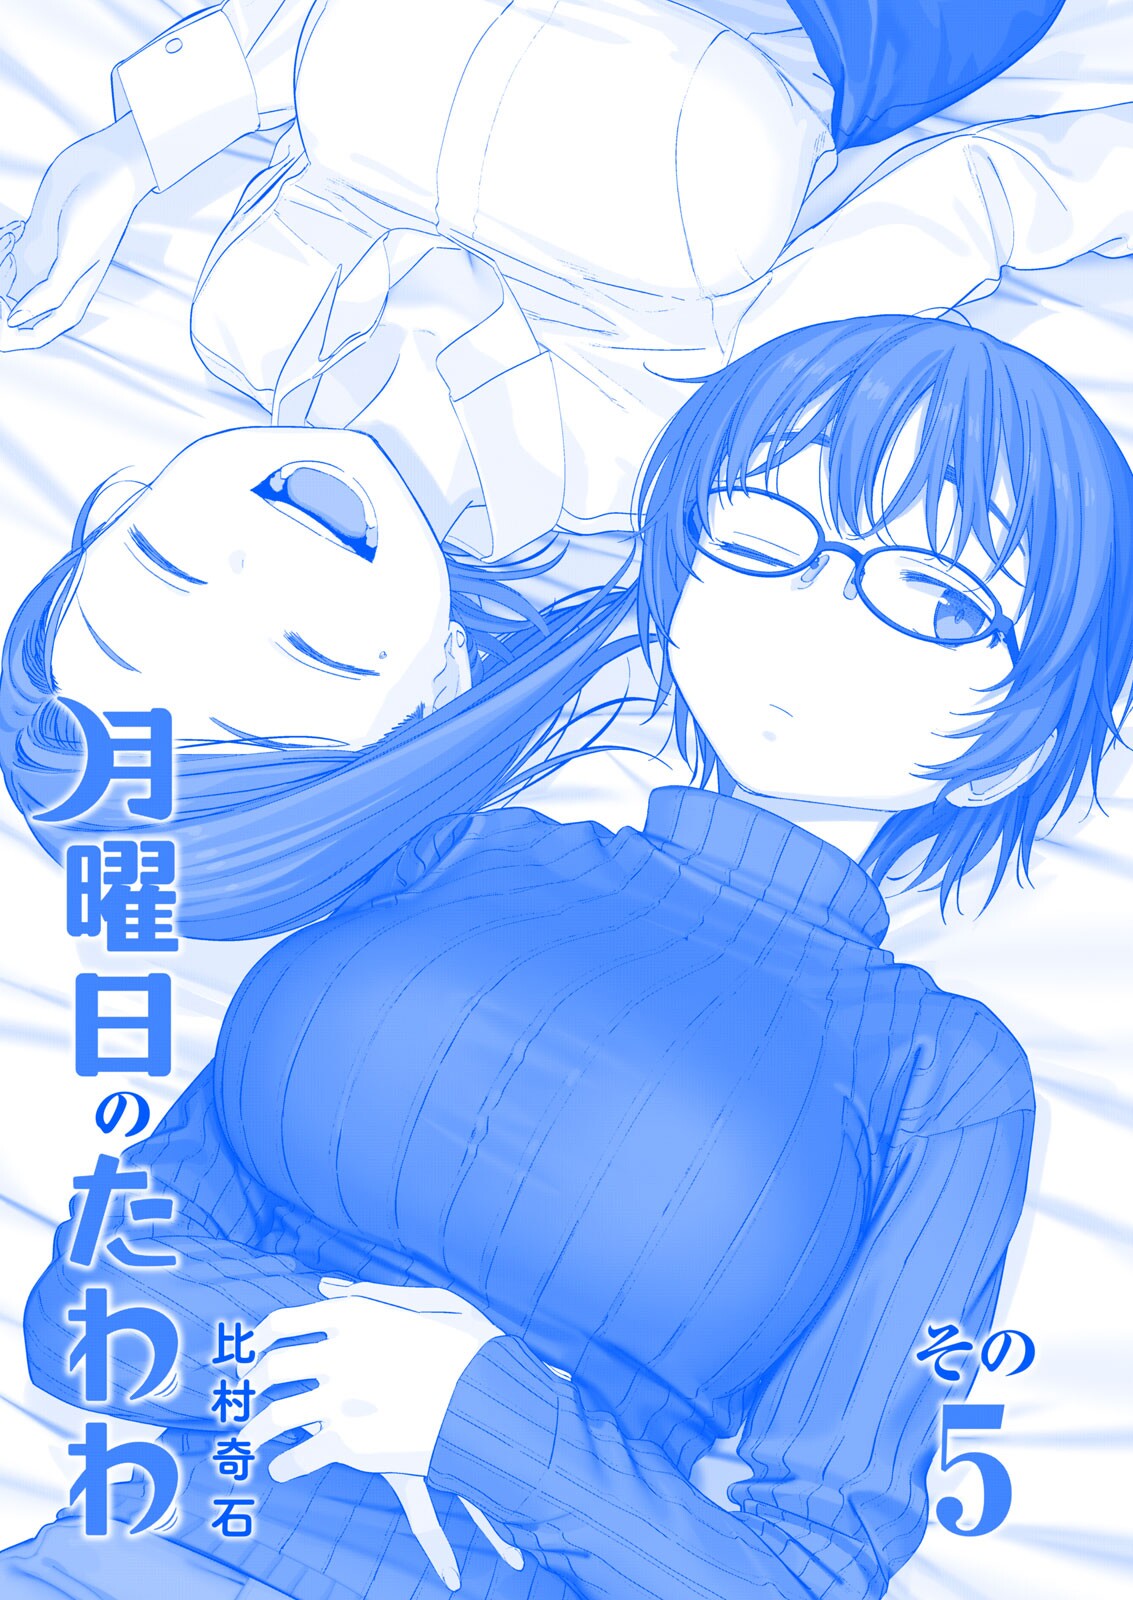 Read Getsuyoubi No Tawawa (Twitter Webcomic) (Fan Colored) Vol.2 Chapter 5:  Part Ii: Manga on Mangakakalot